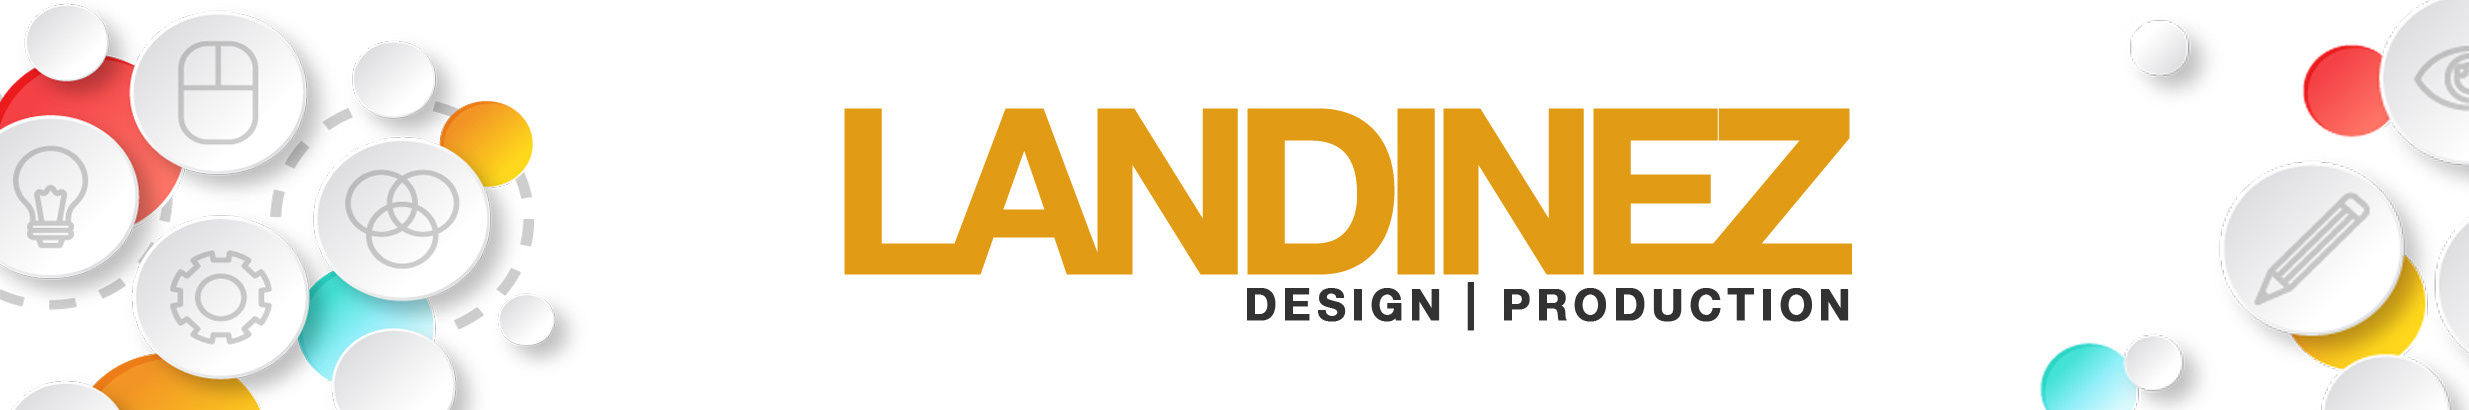 LANDINEZ DESIGN PRODUCTION's profile banner